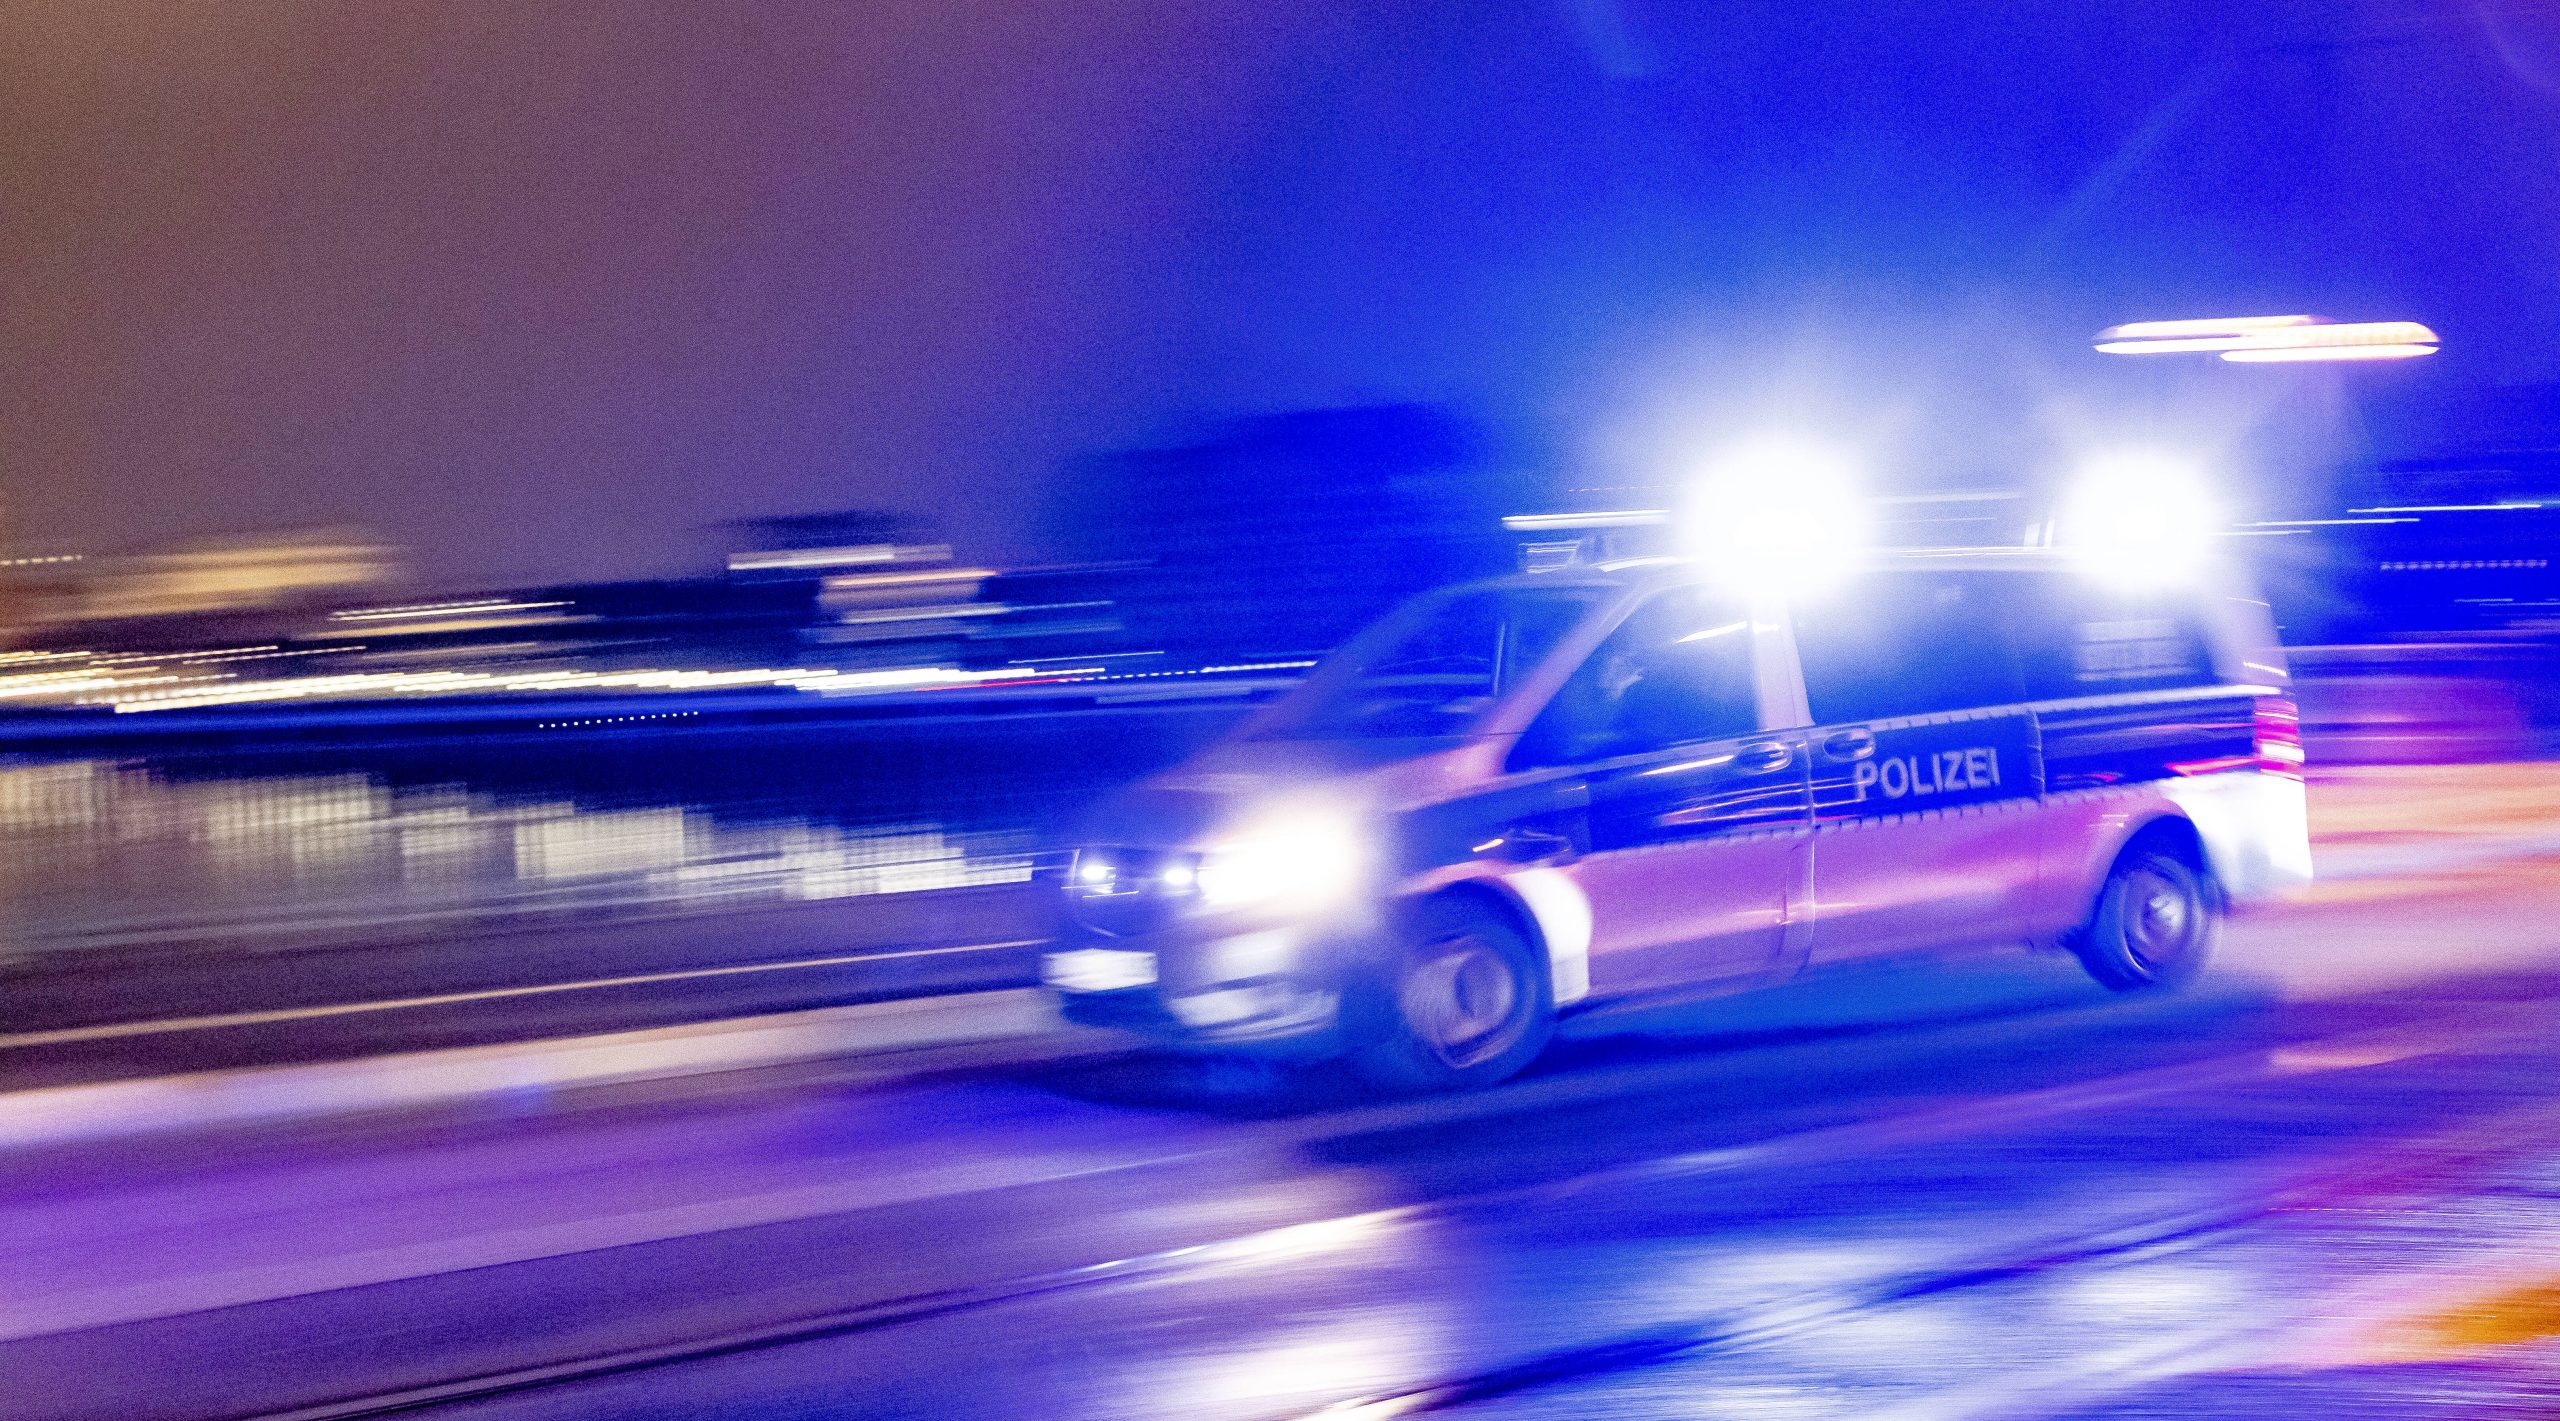 Polizeifahrzeug im Einsatz bei Nacht